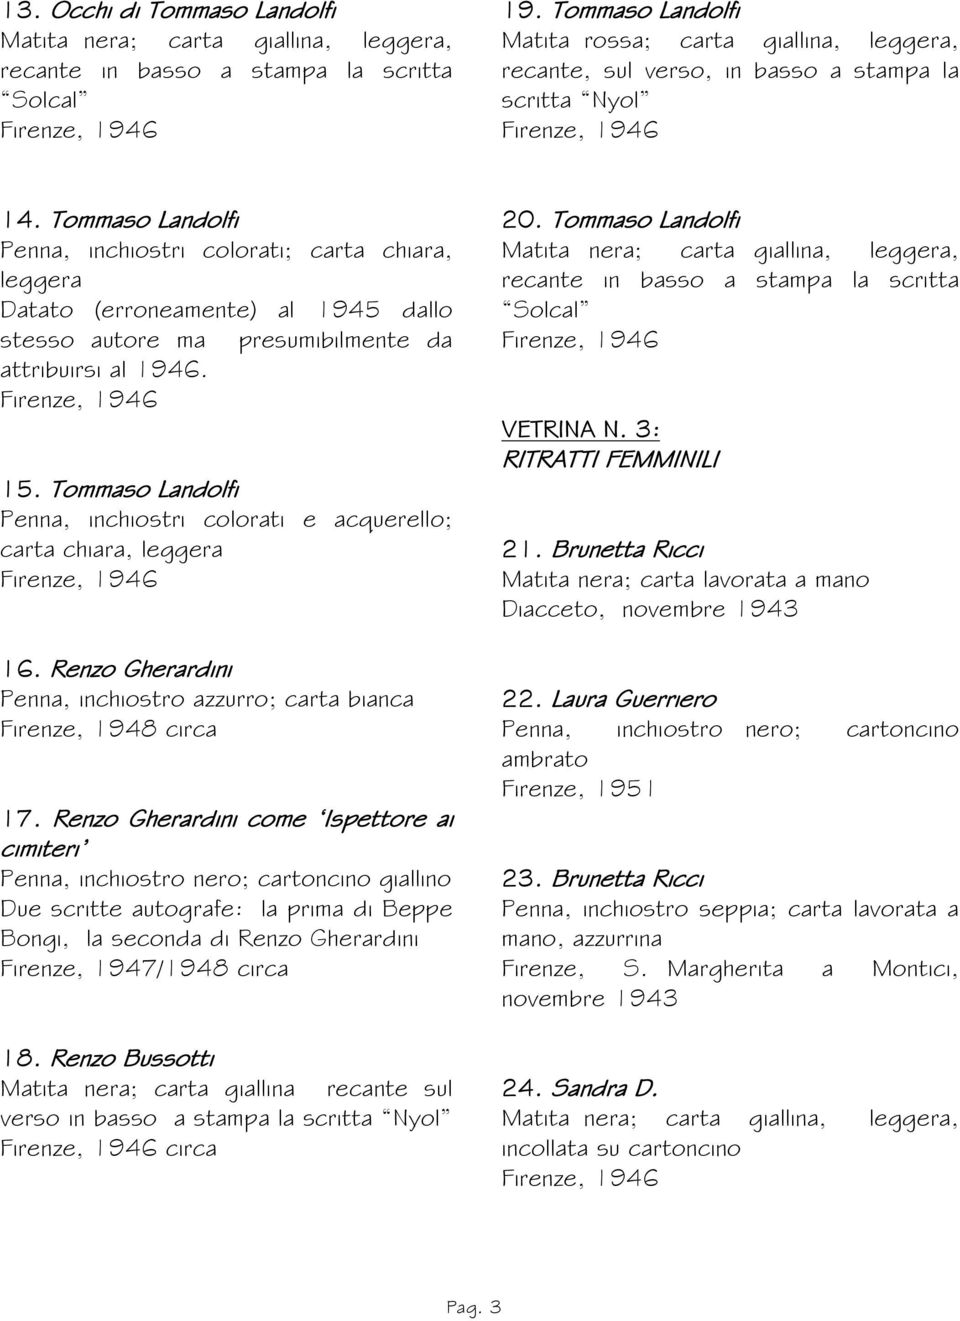 Tommaso Landolfi Penna, inchiostri colorati; carta chiara, leggera Datato (erroneamente) al 1945 dallo stesso autore ma presumibilmente da attribuirsi al 1946. 15.